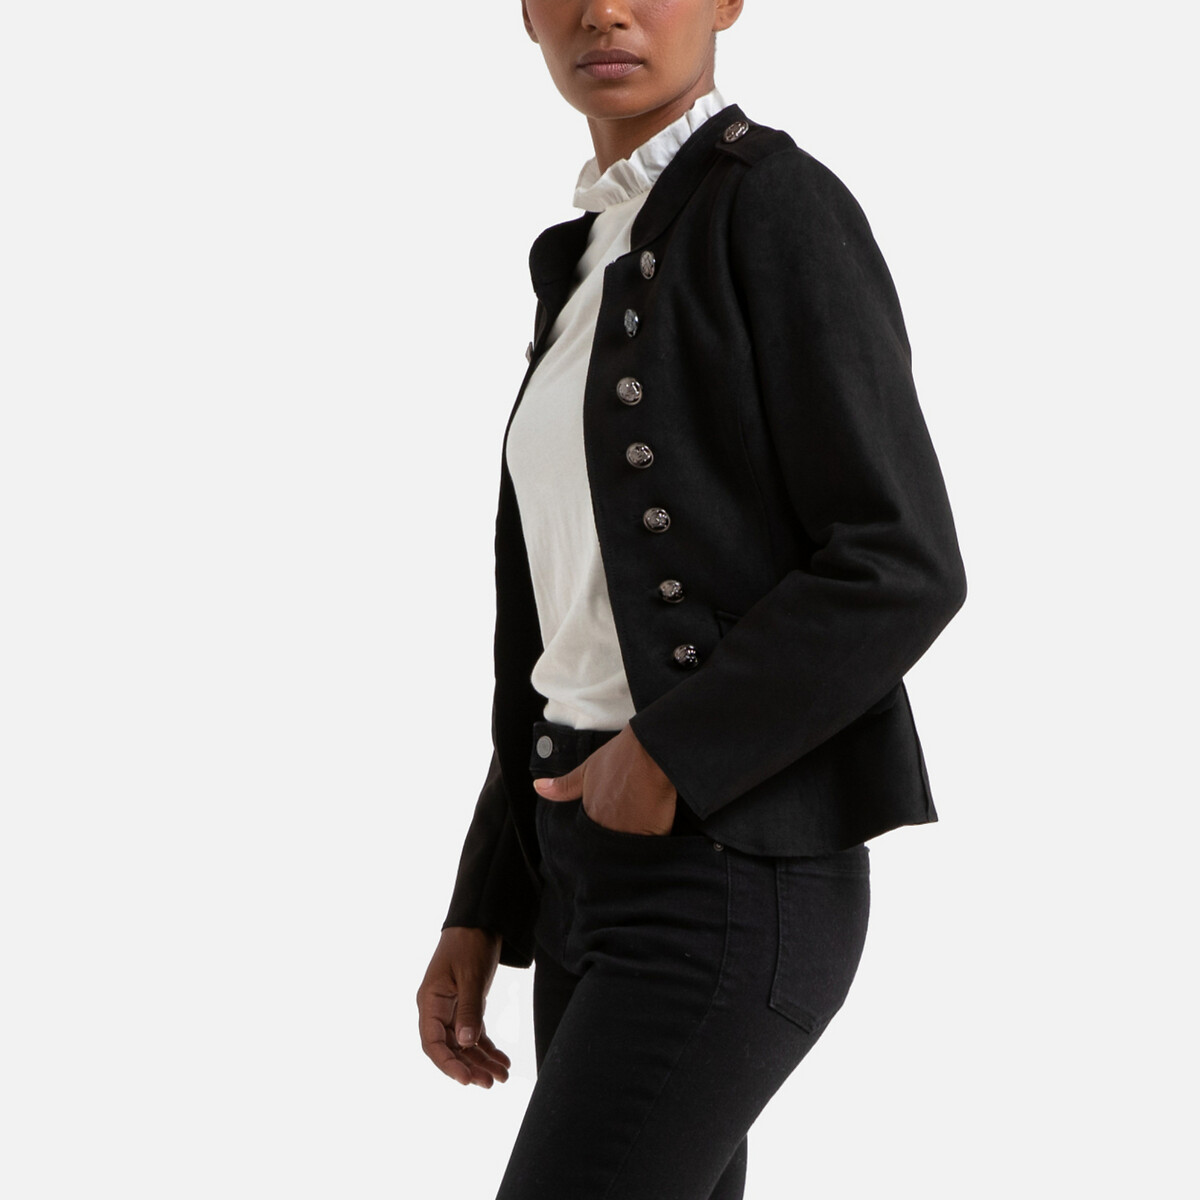 Жакет La Redoute На пуговицах спереди и плечики с карманами S черный, размер S